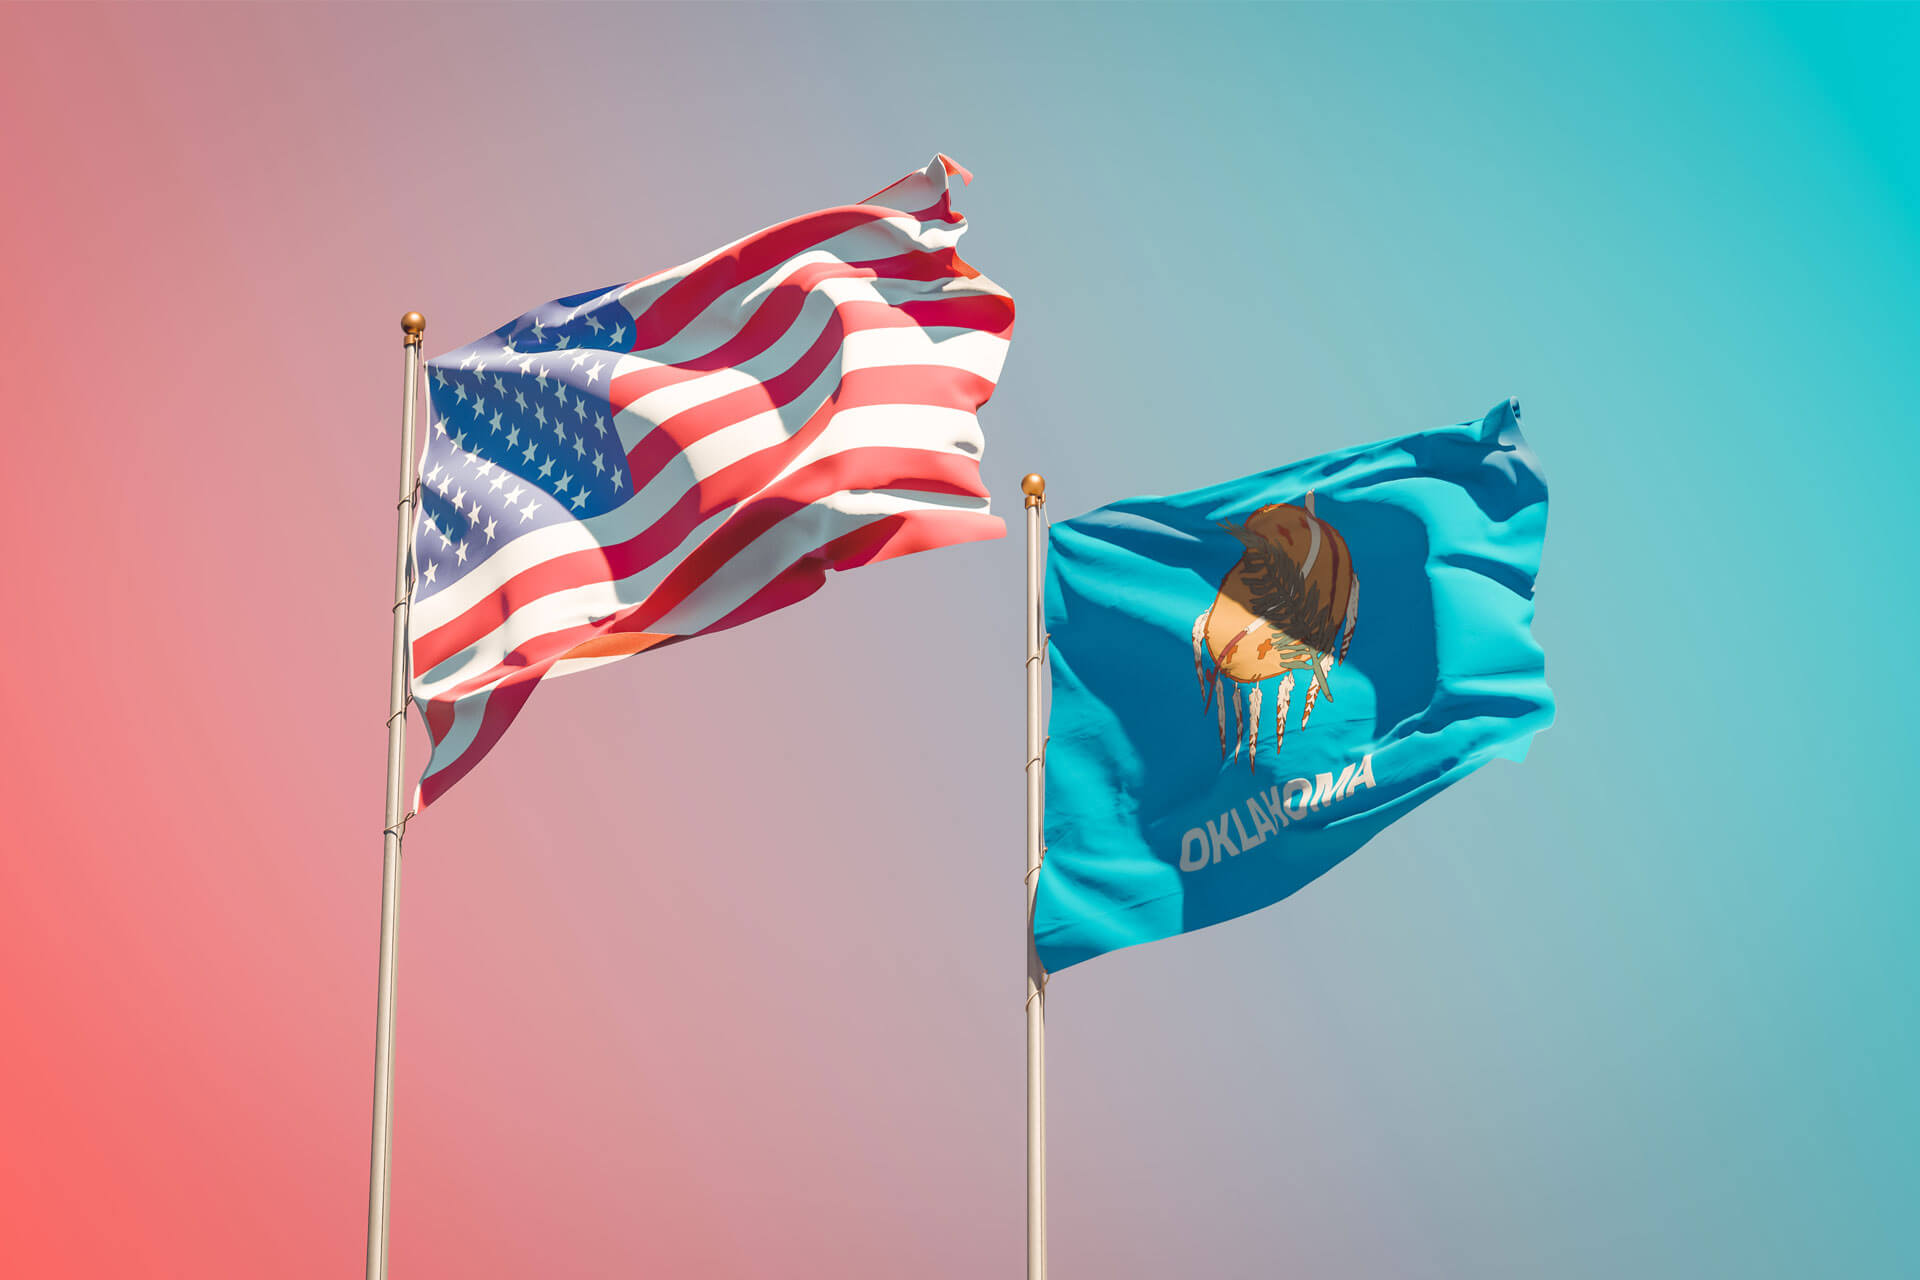 USA and Oklahoma state flags